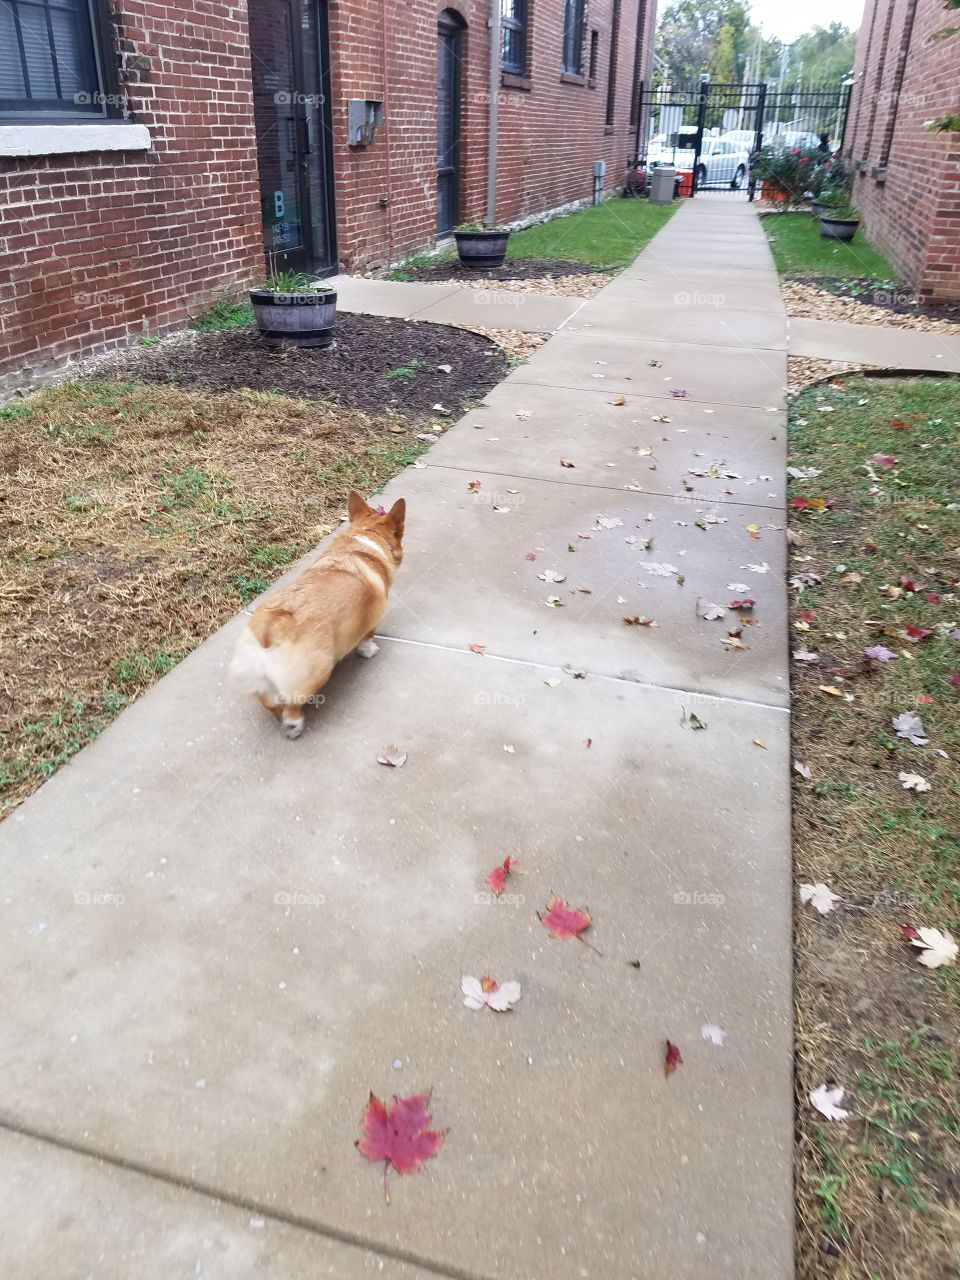 leaves on the sidewalk